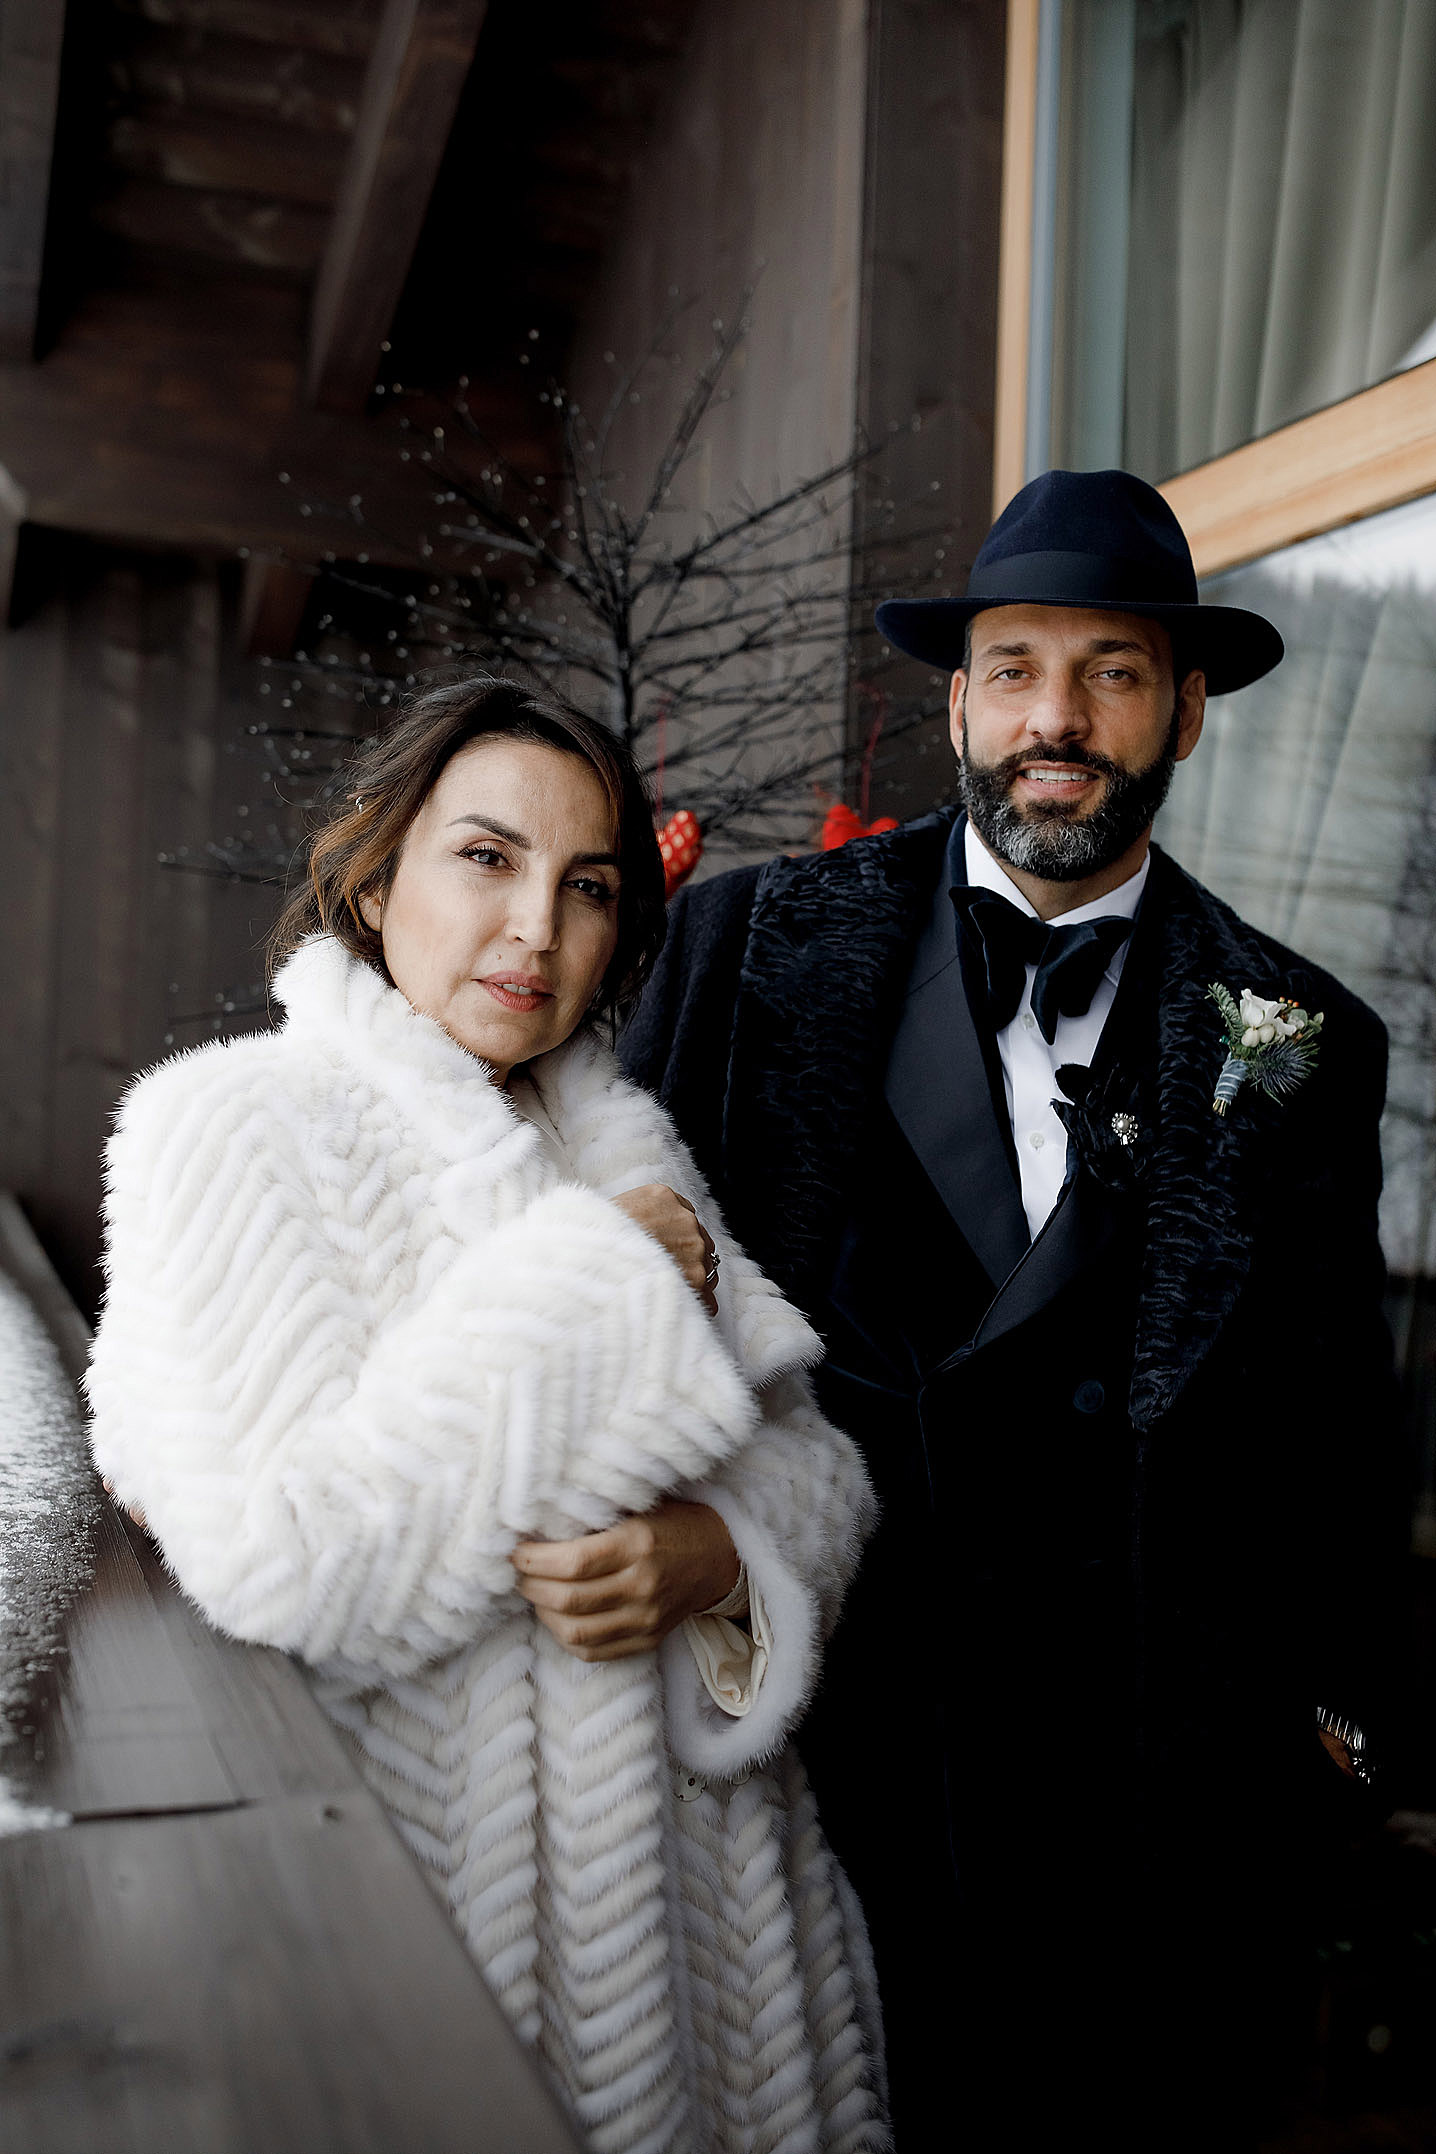 matrimonio invernale sulla neve fendi val badia colfosco fotografo